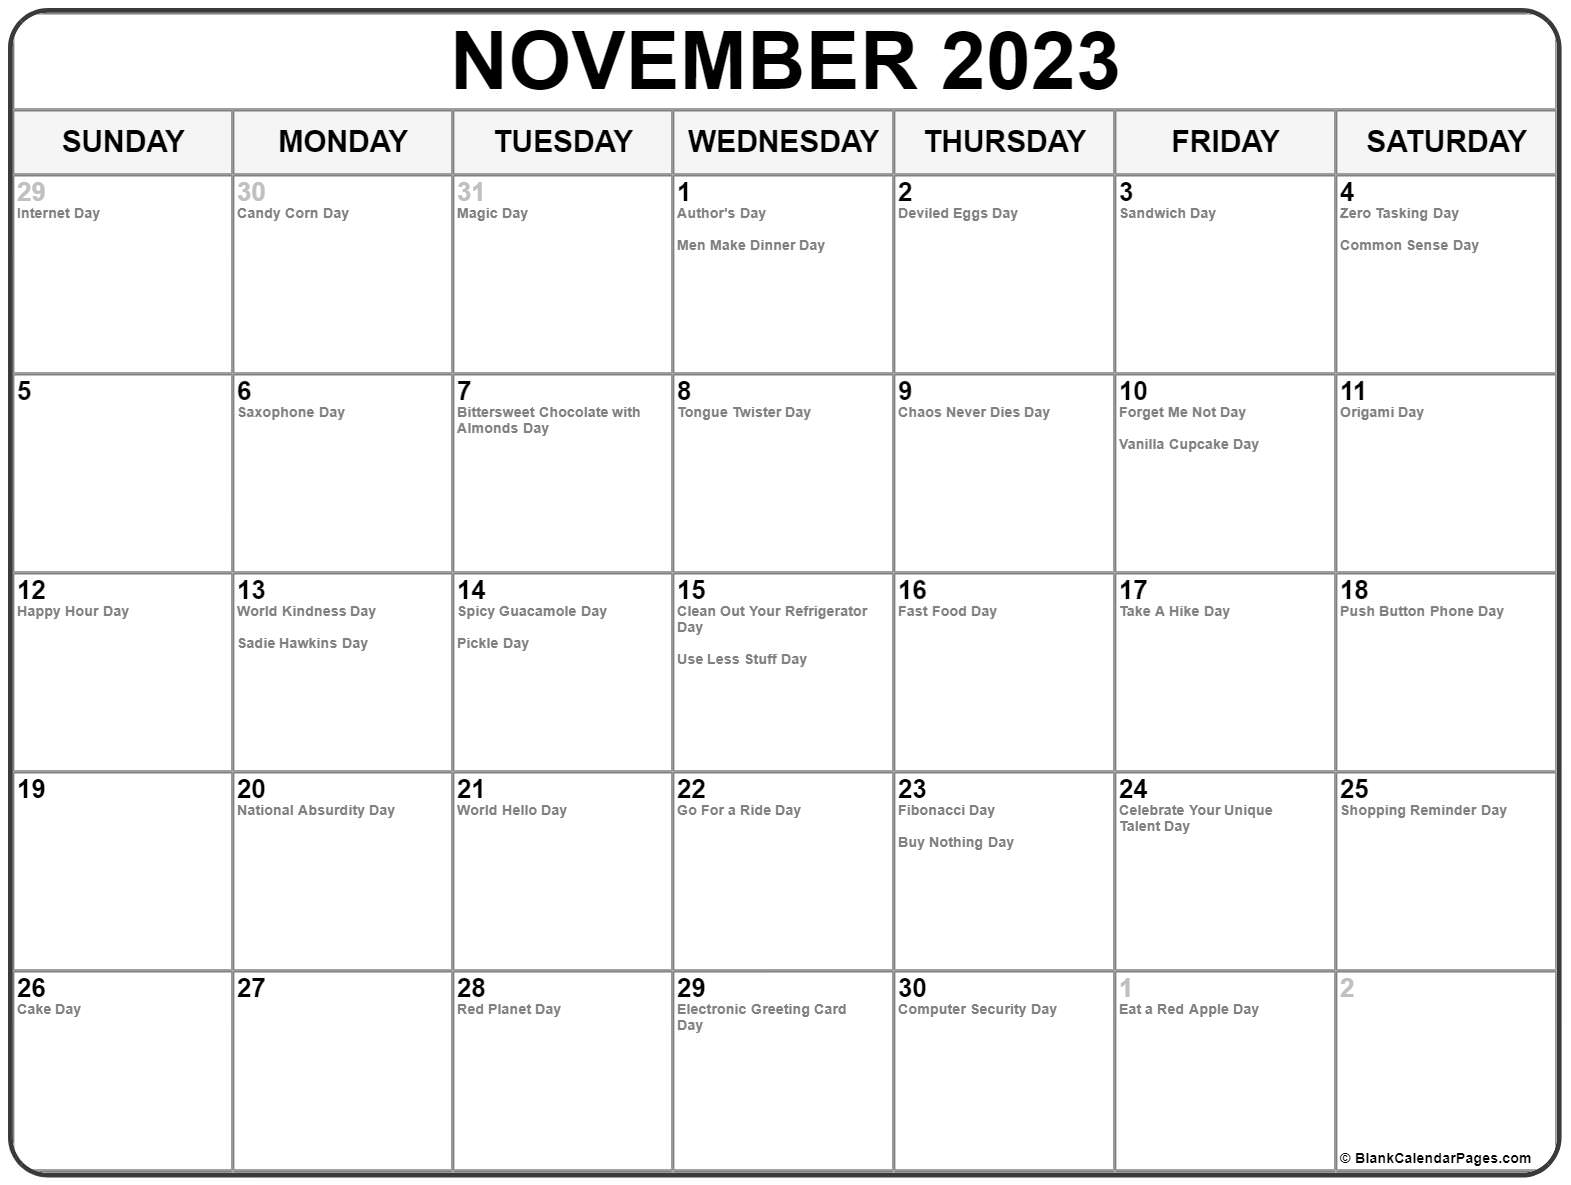 incredible-blank-calendar-for-december-2023-photos-calendar-ideas-2023